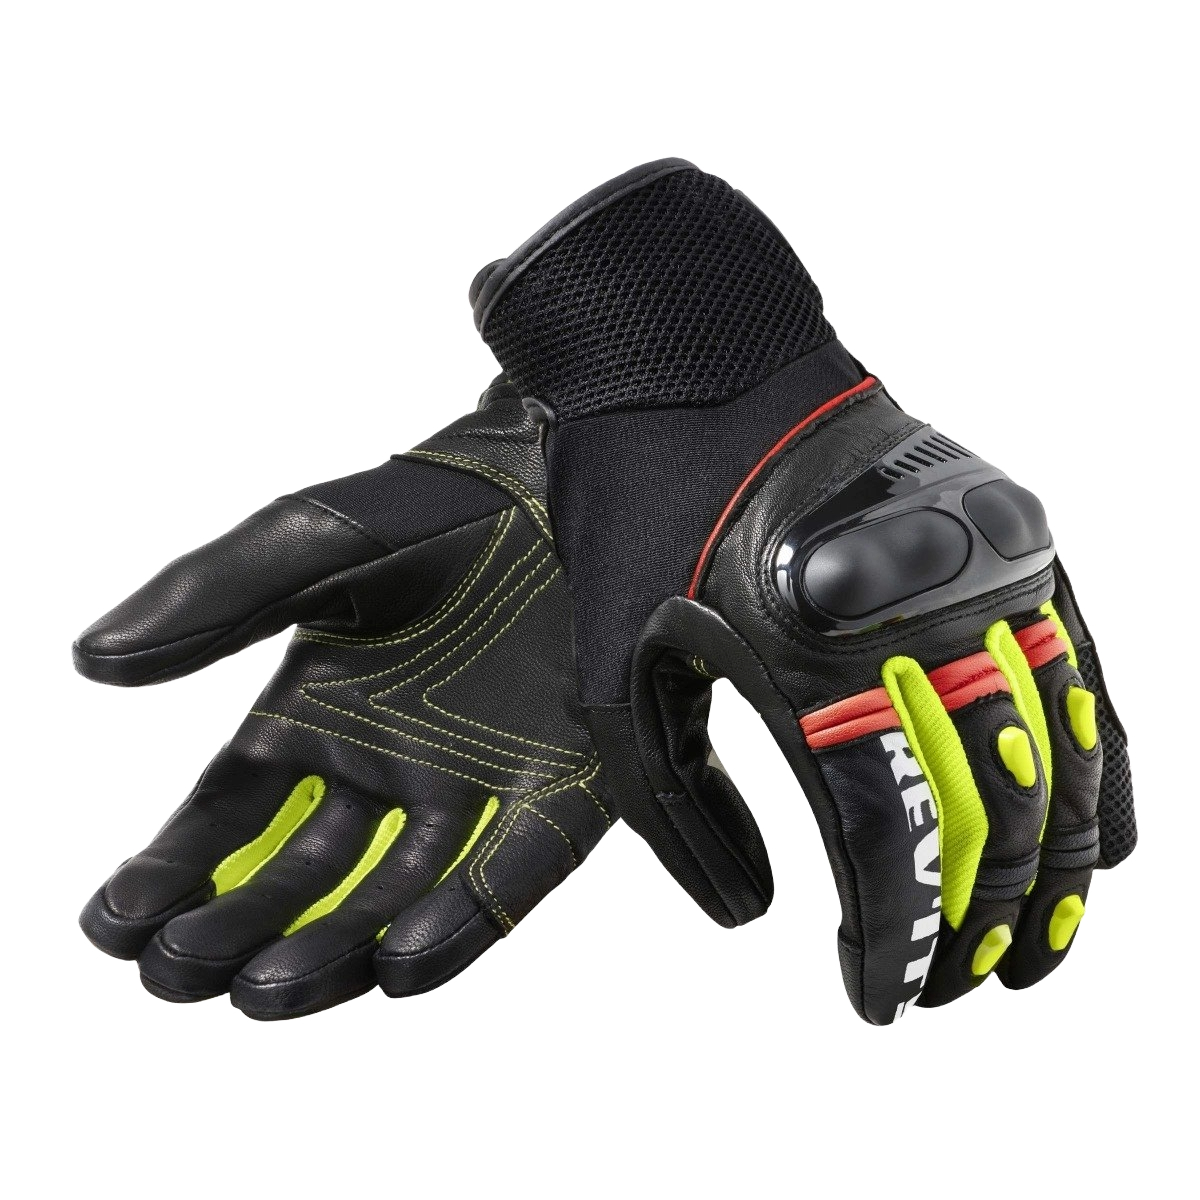 REV'IT! Metric Gloves Black Neon Yellow Size 3XL